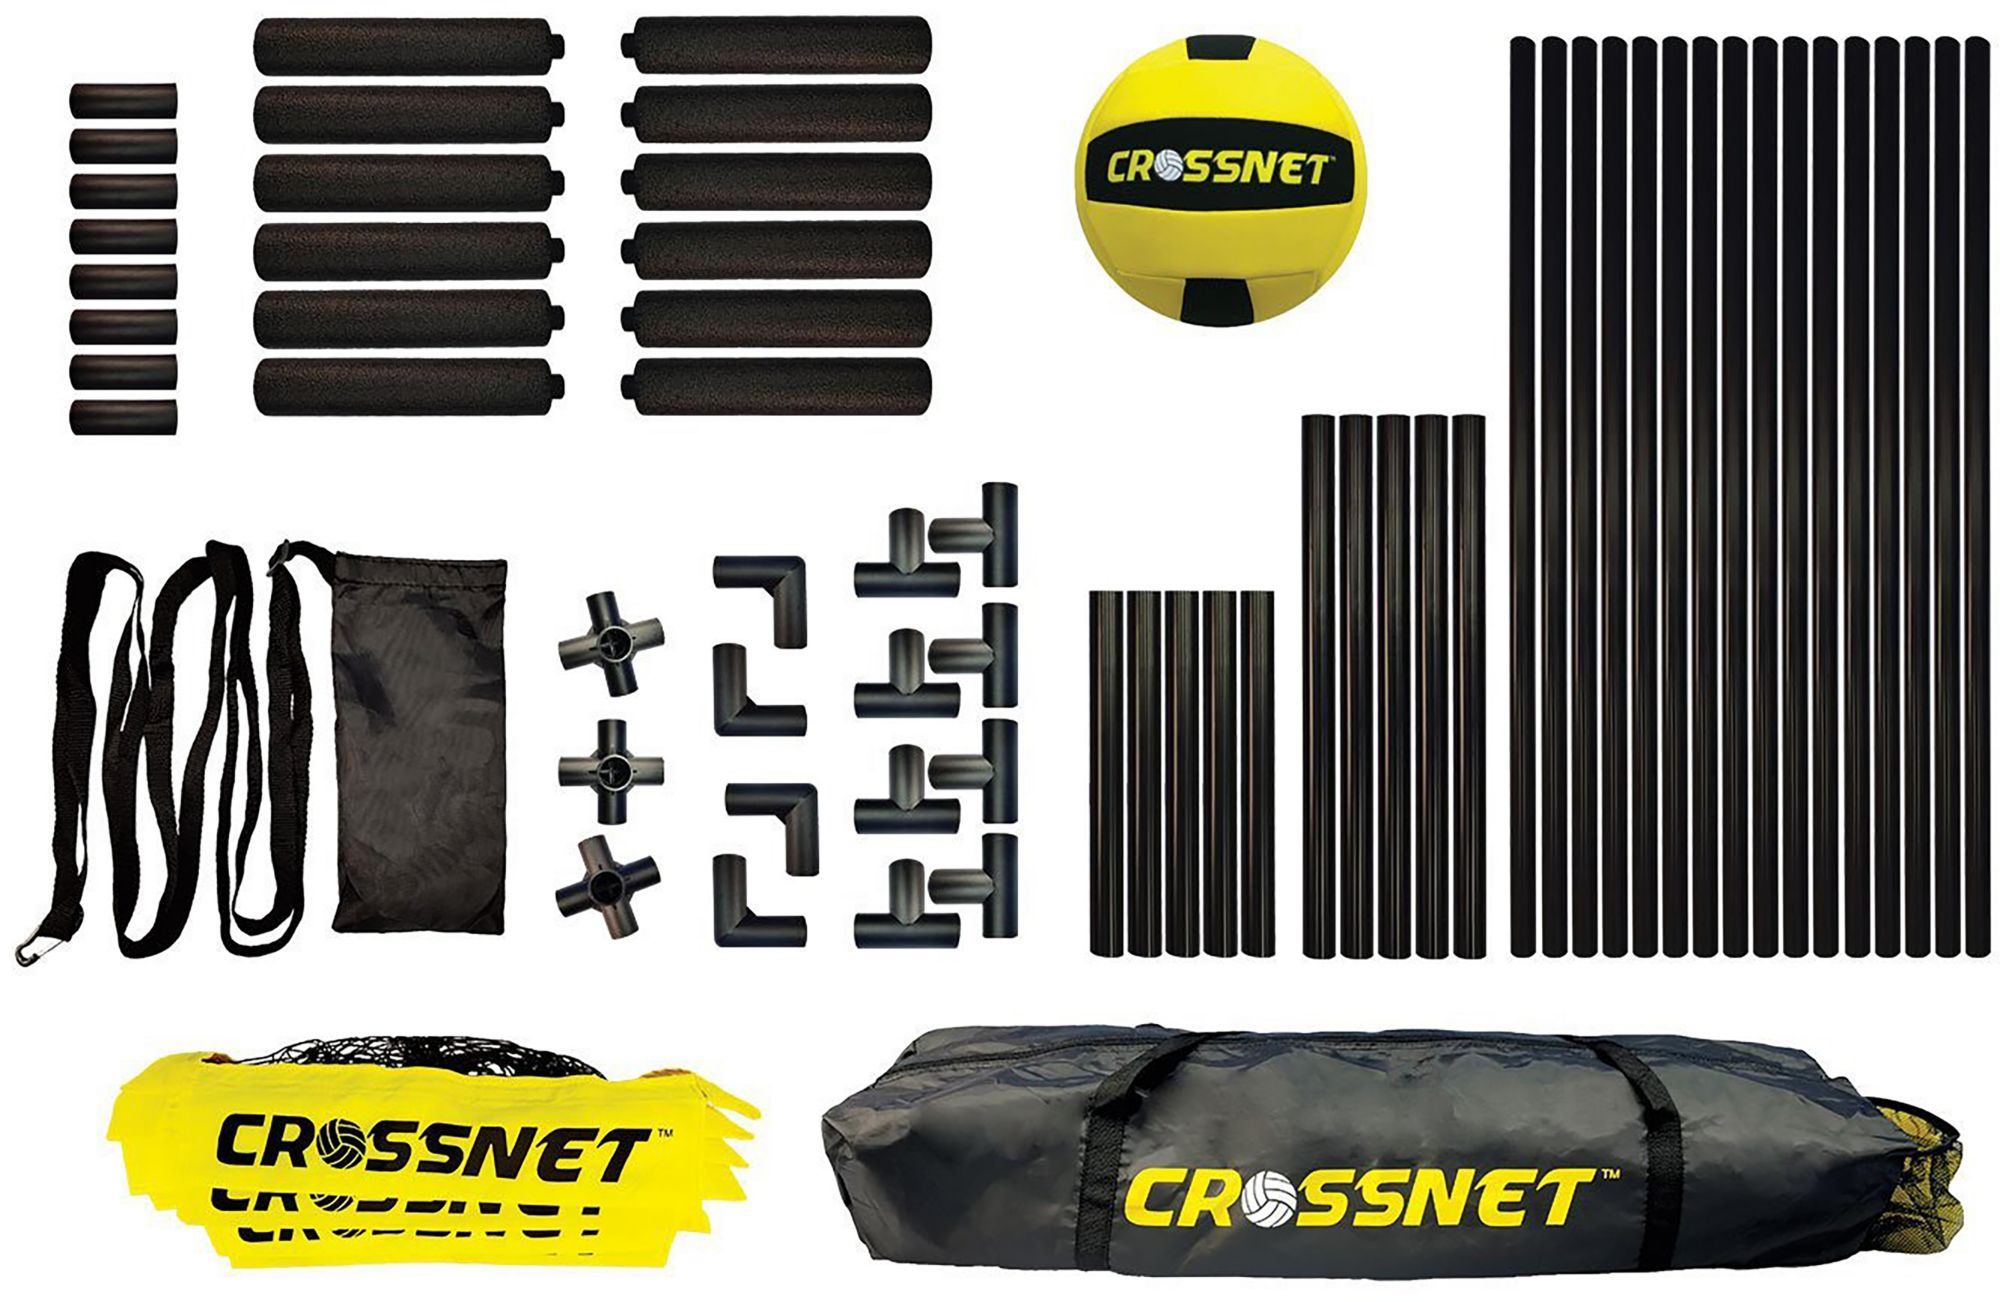 CROSSNET Crossnet H20